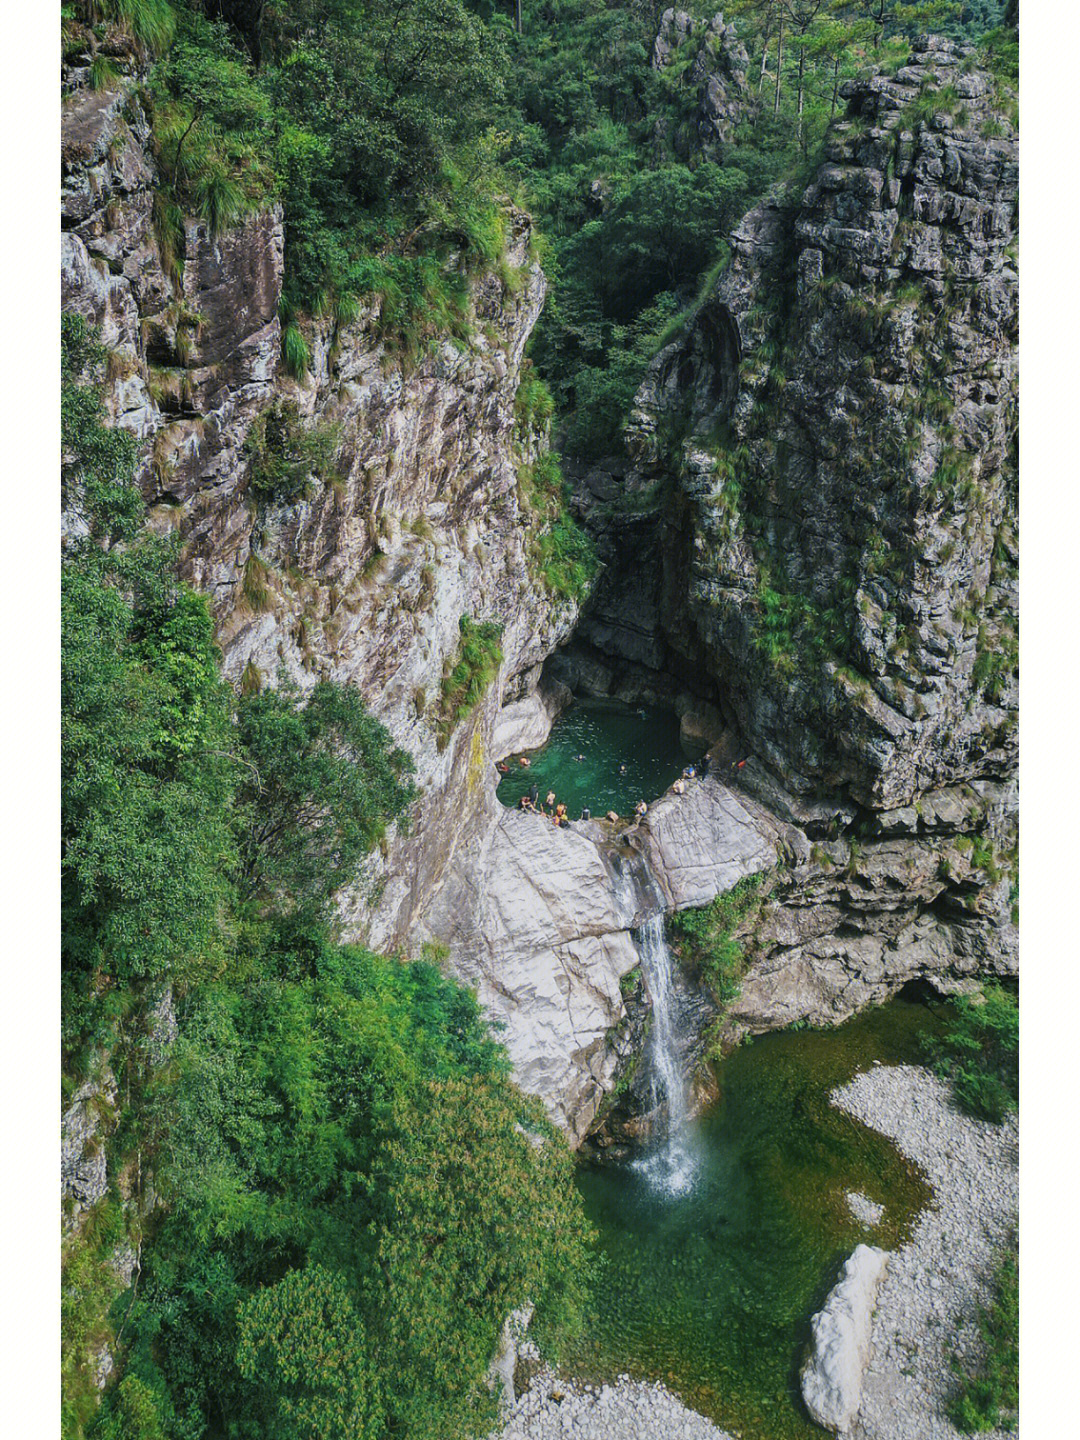 绿眼睛 位于石门台国家级自然保护区内 长期处于封闭状态 从高处观看